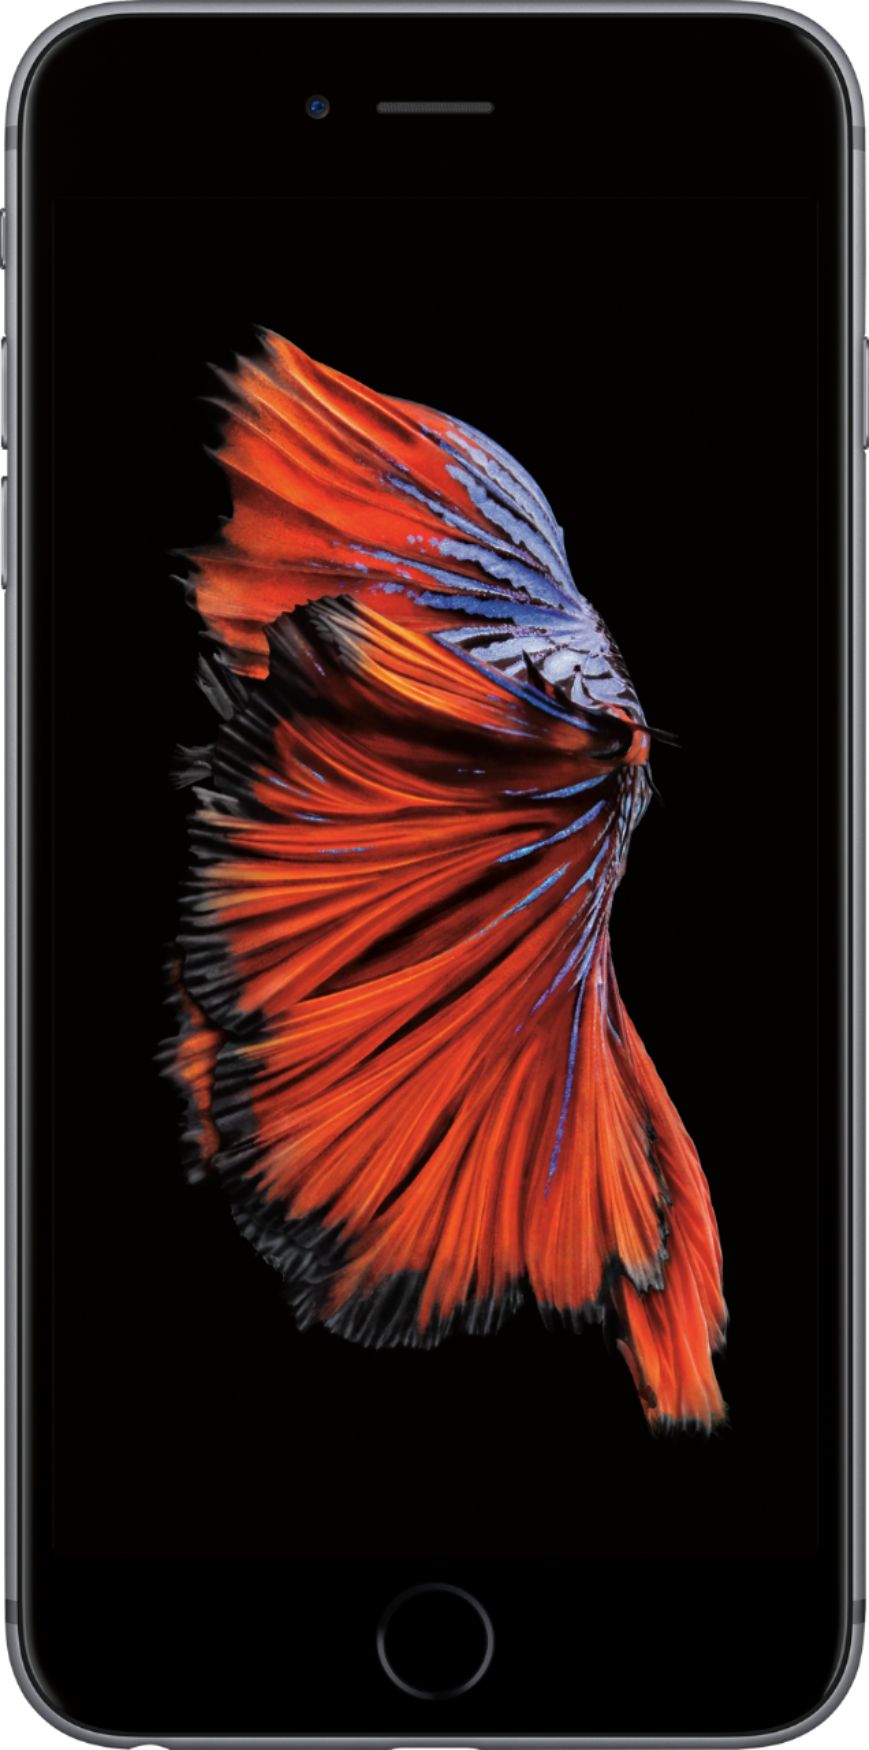 dodelijk Eik debat Best Buy: Apple iPhone 6s Plus 32GB Space Gray (Verizon) MN342LL/A